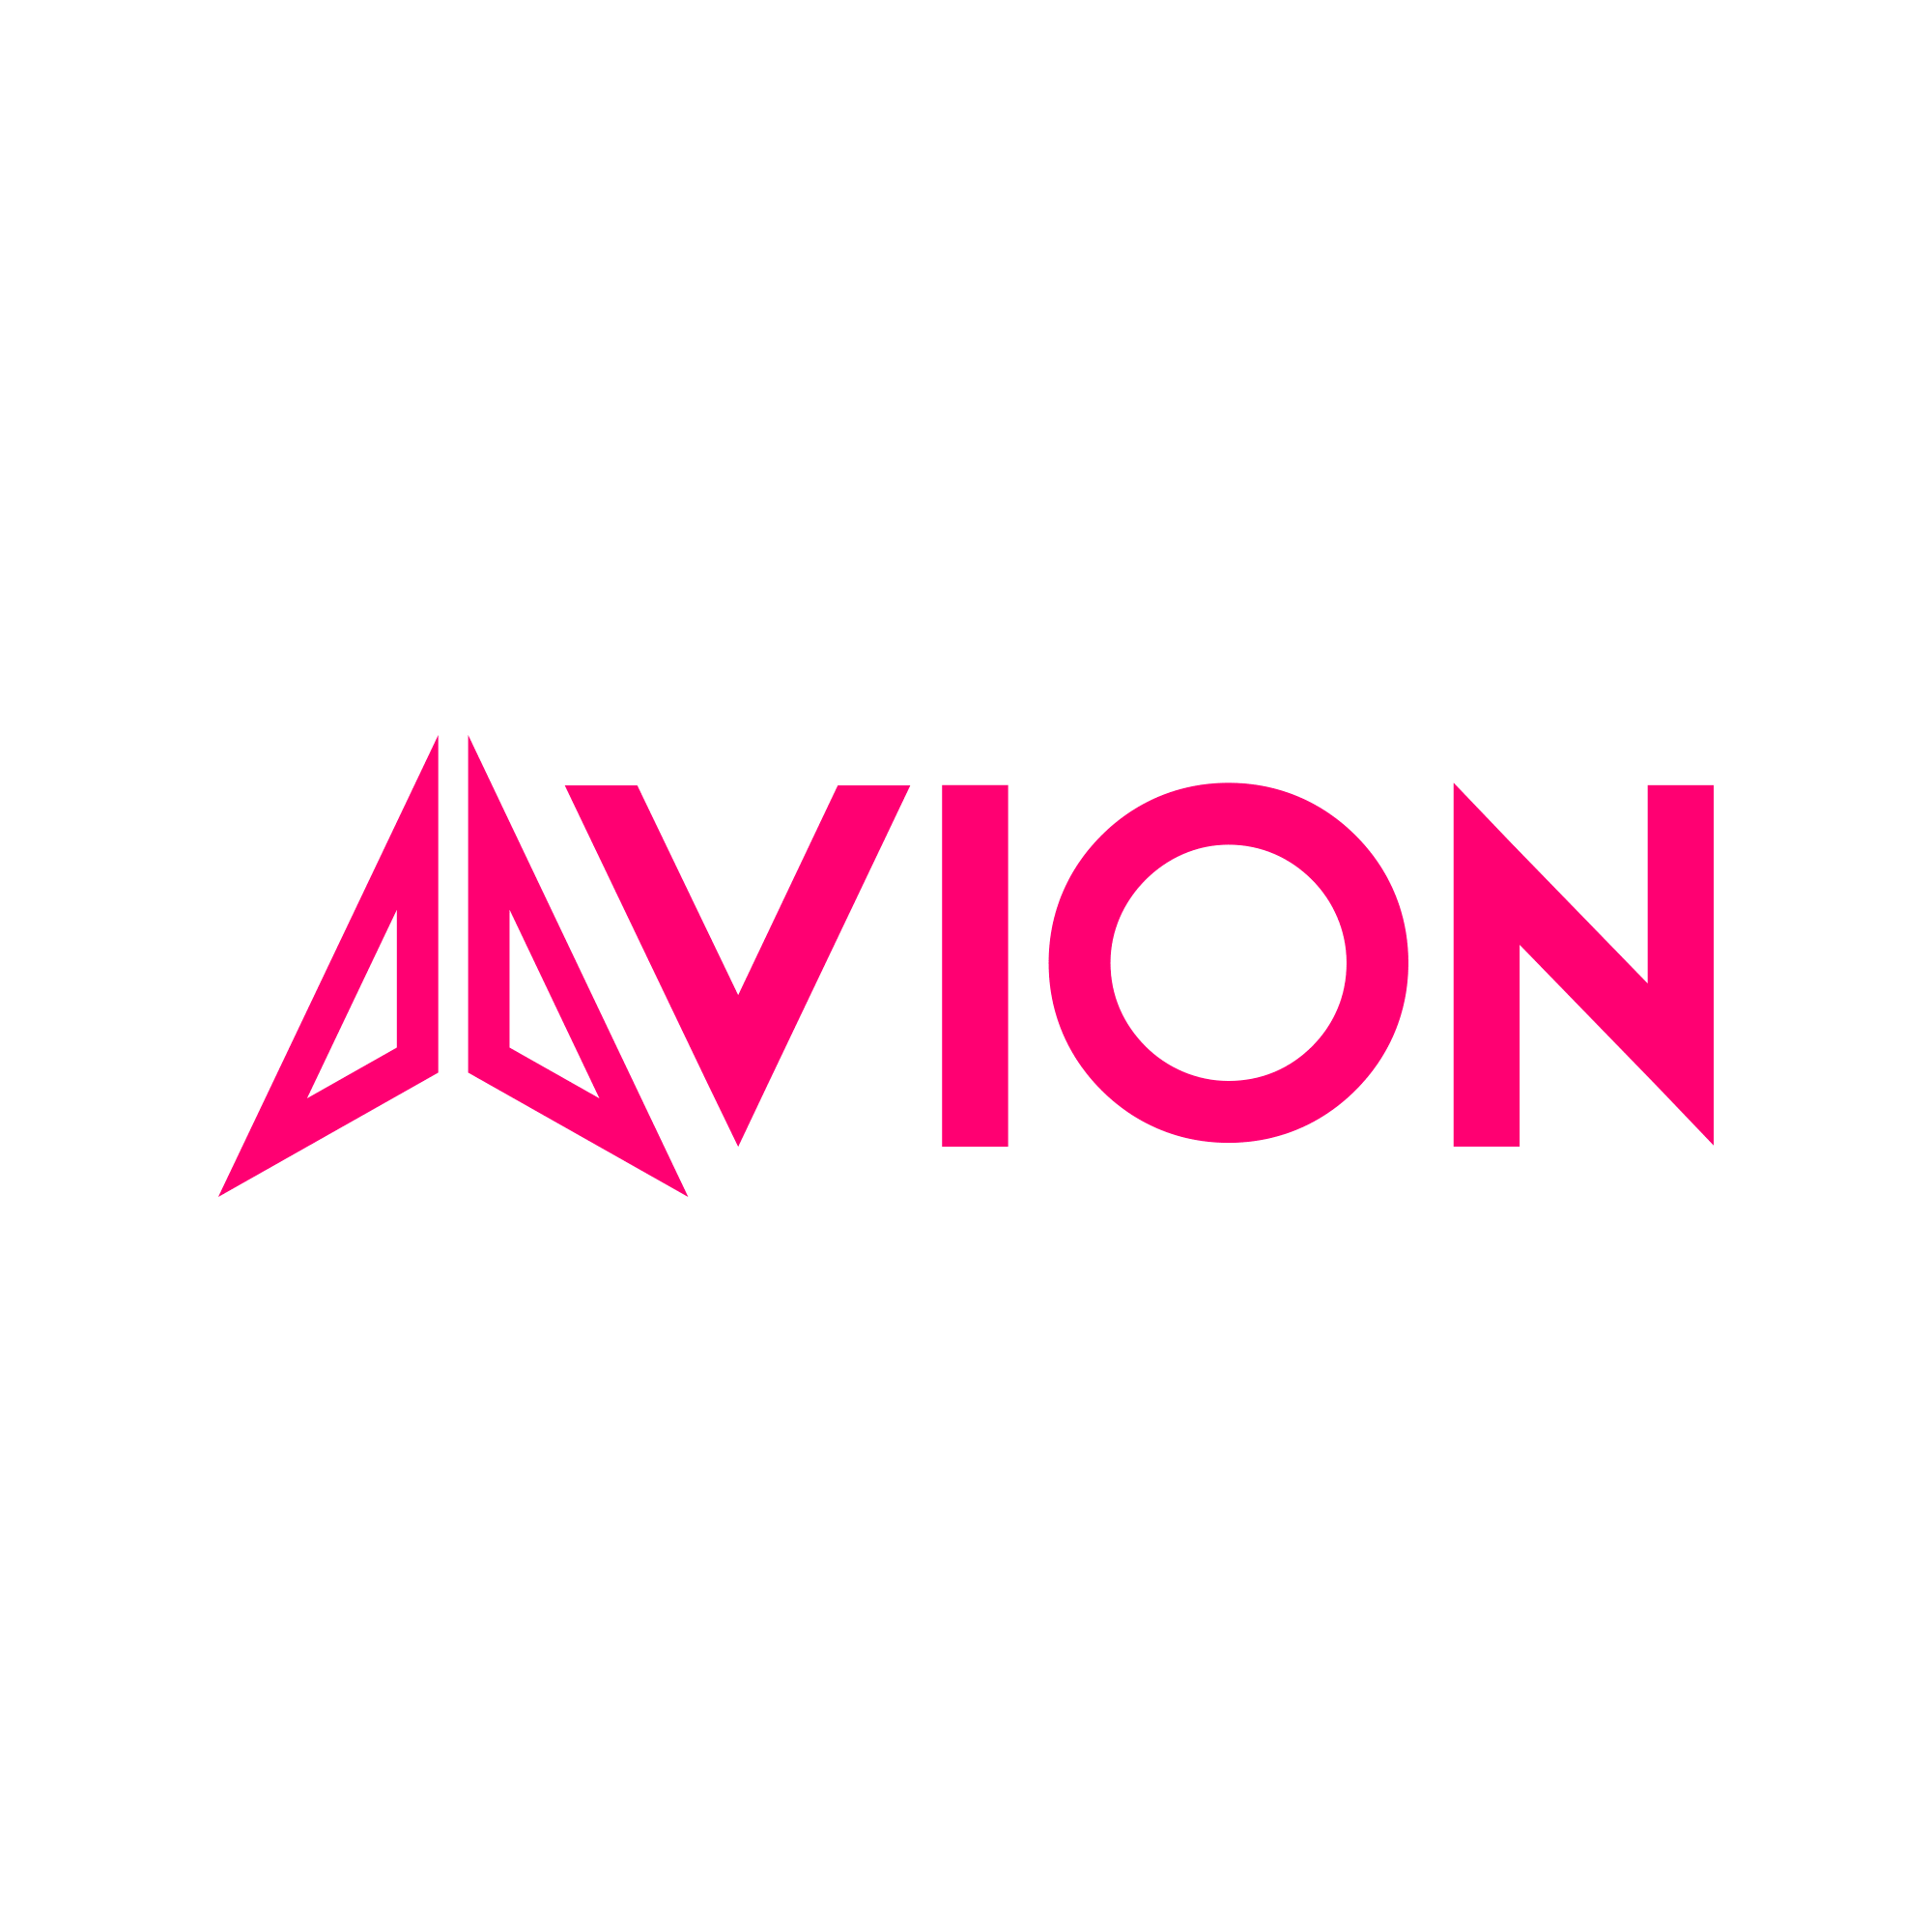 Avion - Logo